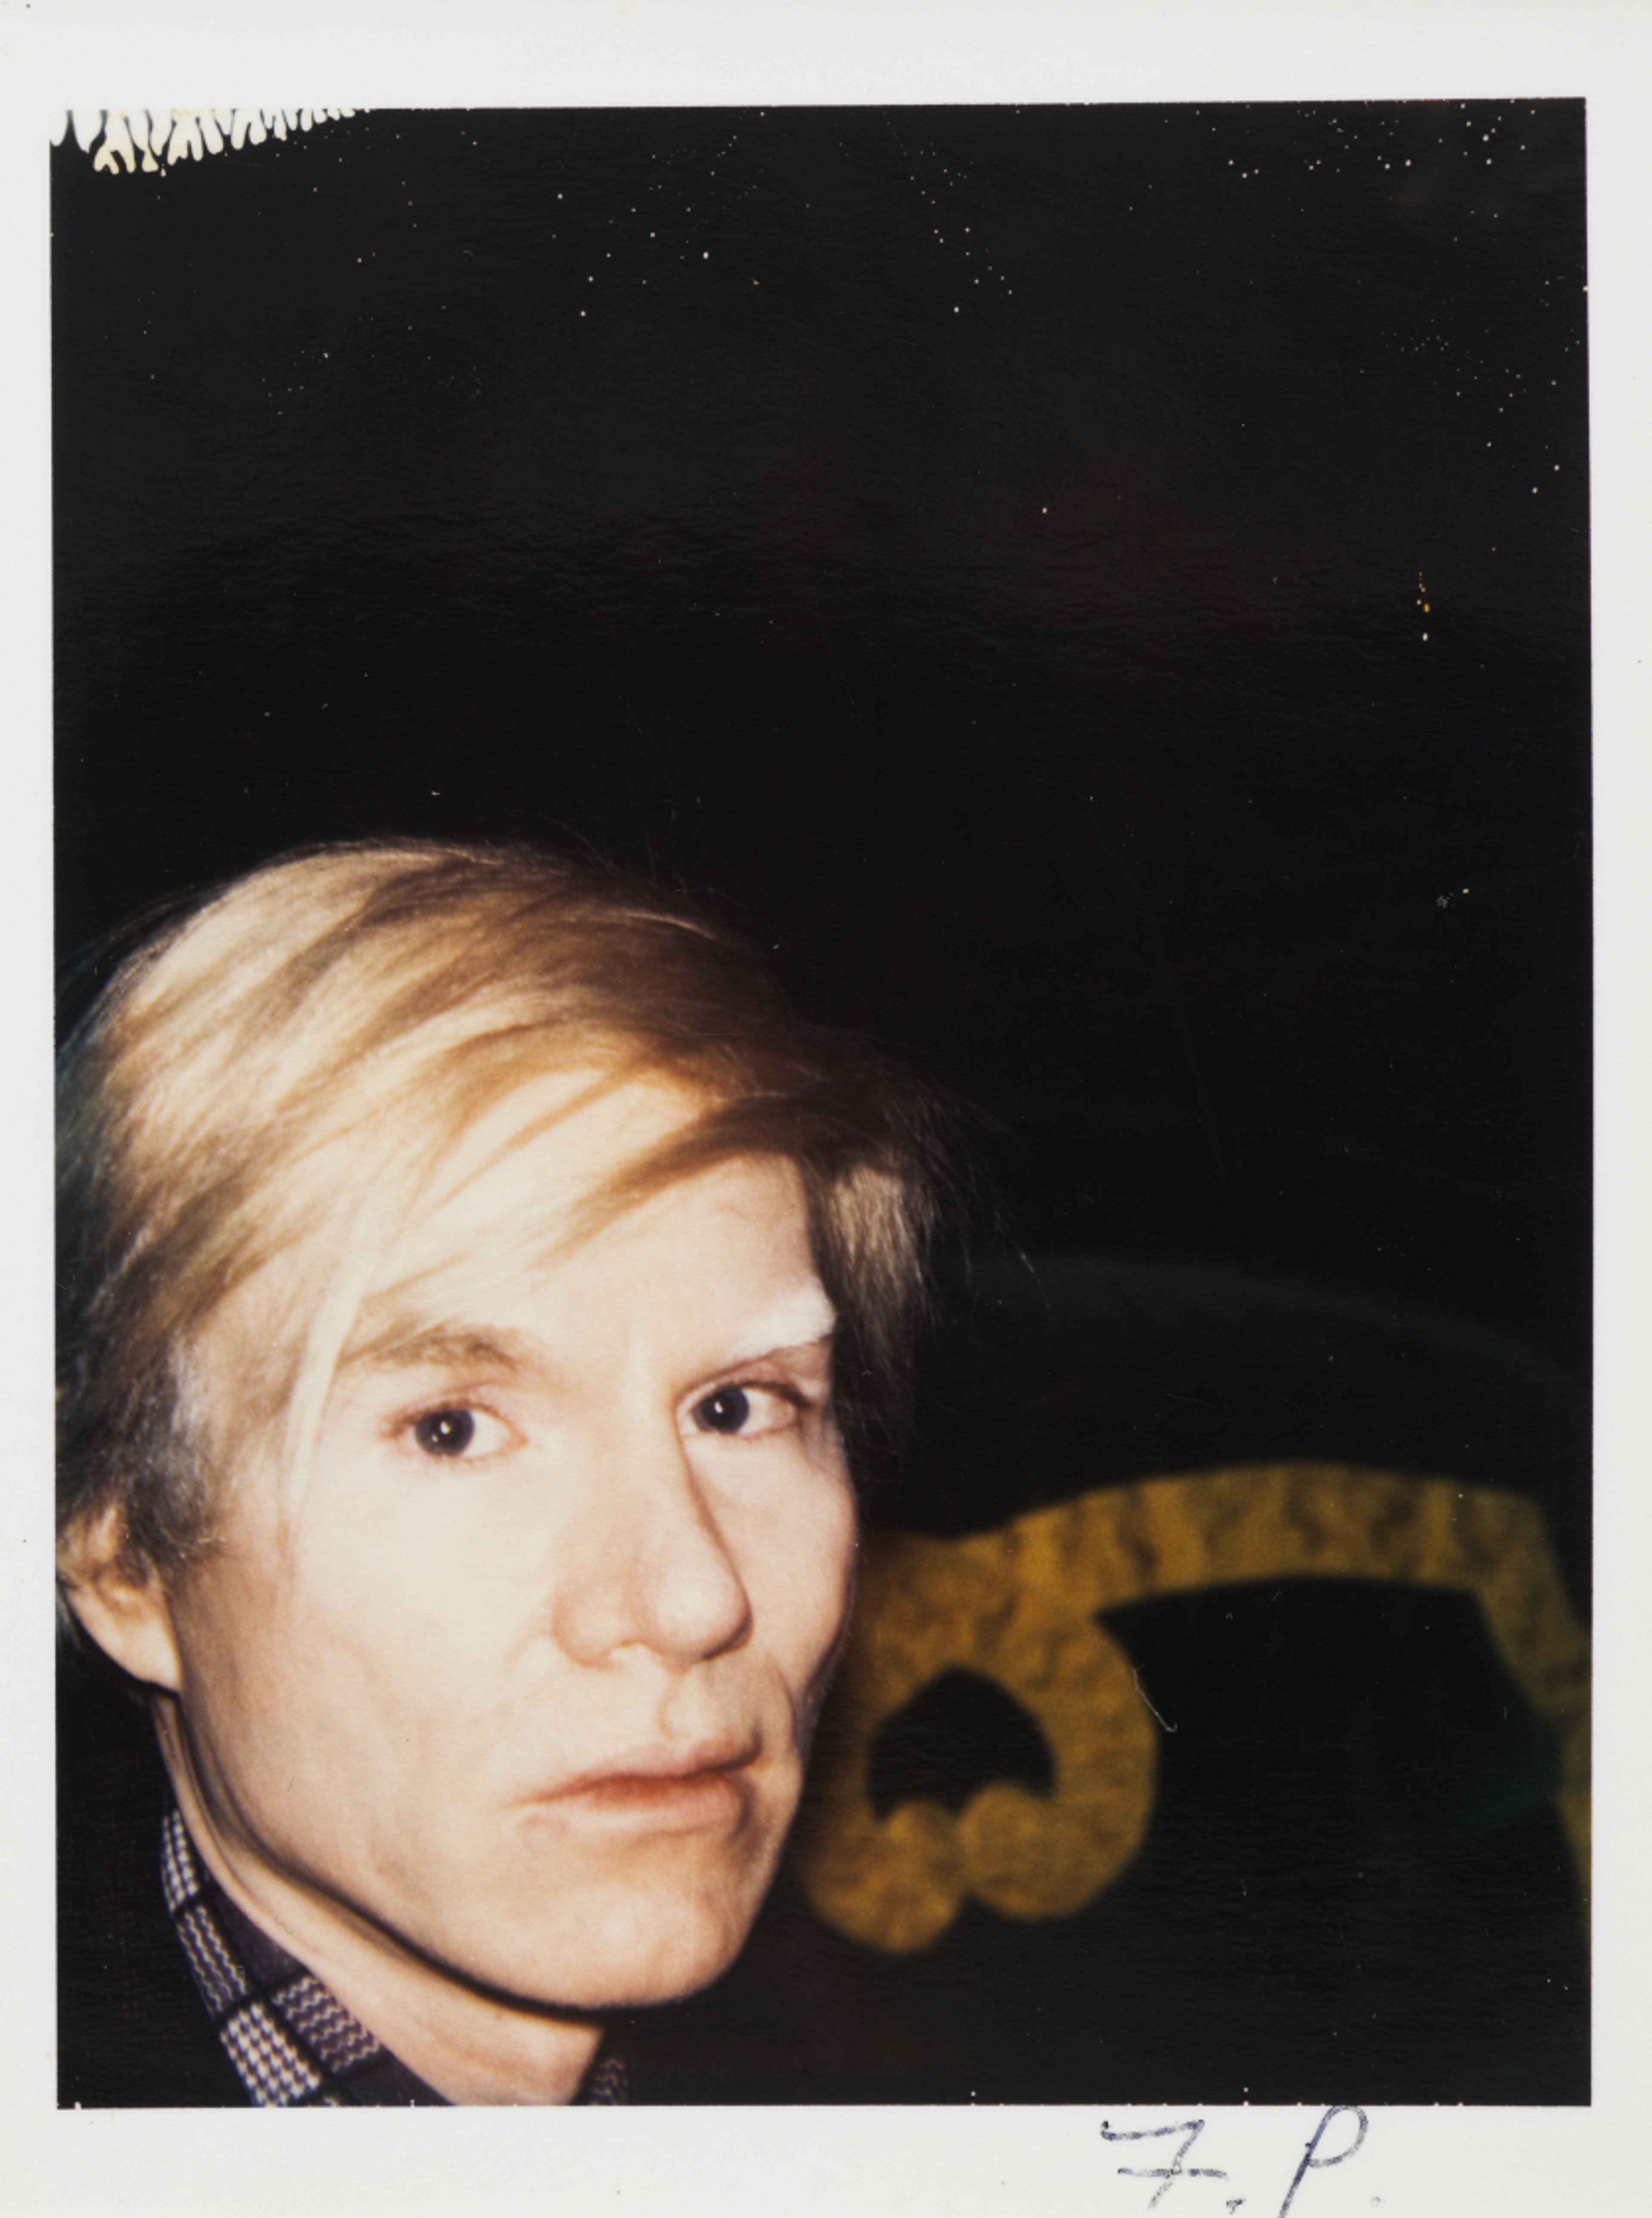 Porträt von Andy Warhol, der eine blonde Perücke trägt und direkt in die Kamera schaut.